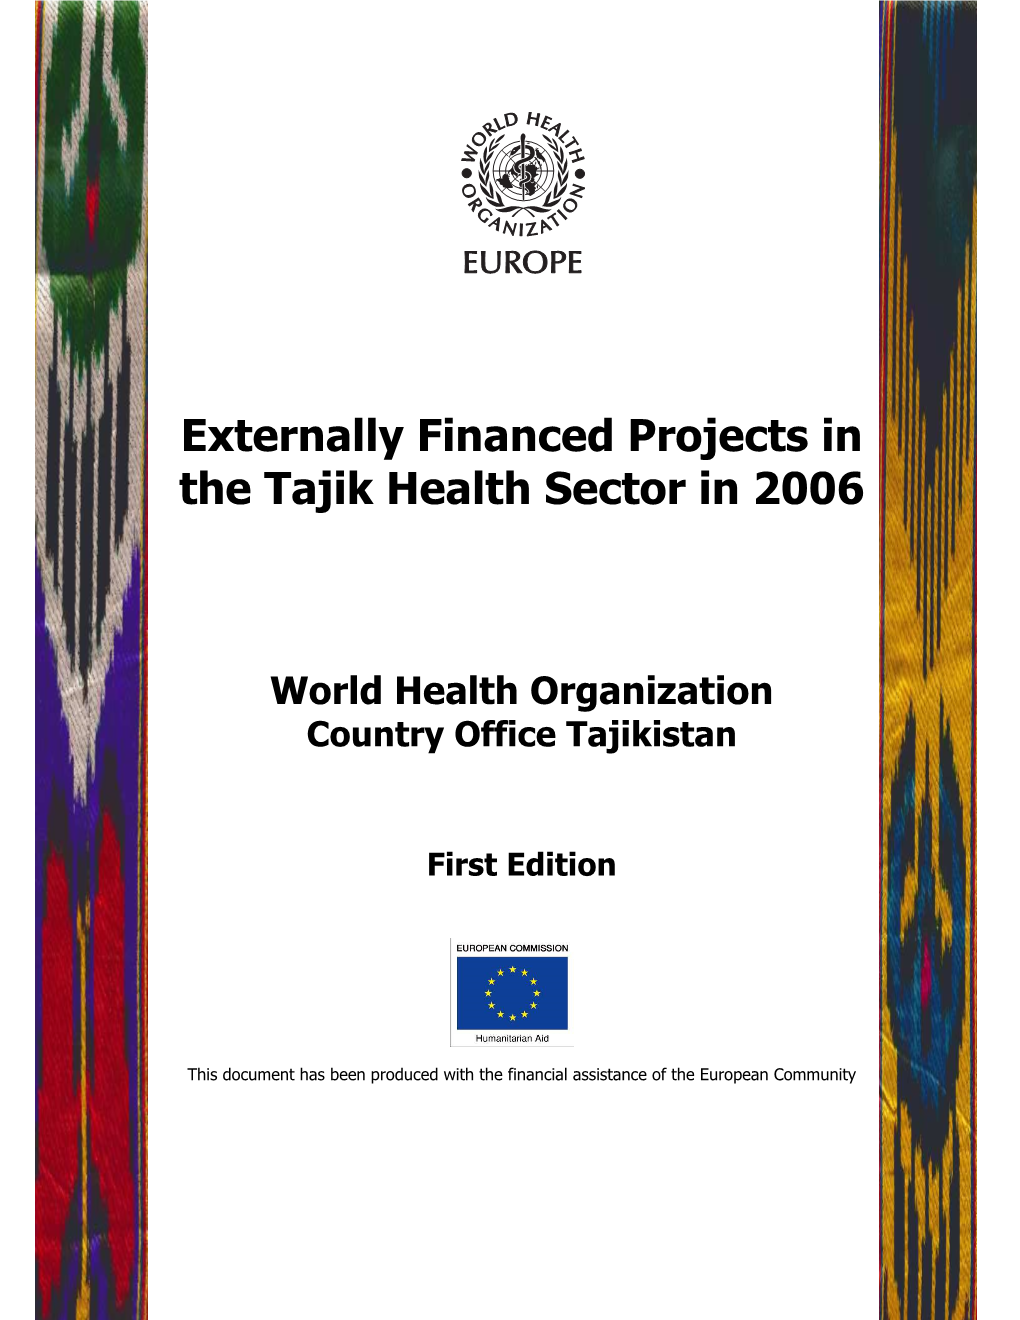 Externally Financed Projects in the Tajik Health Sector in 2006